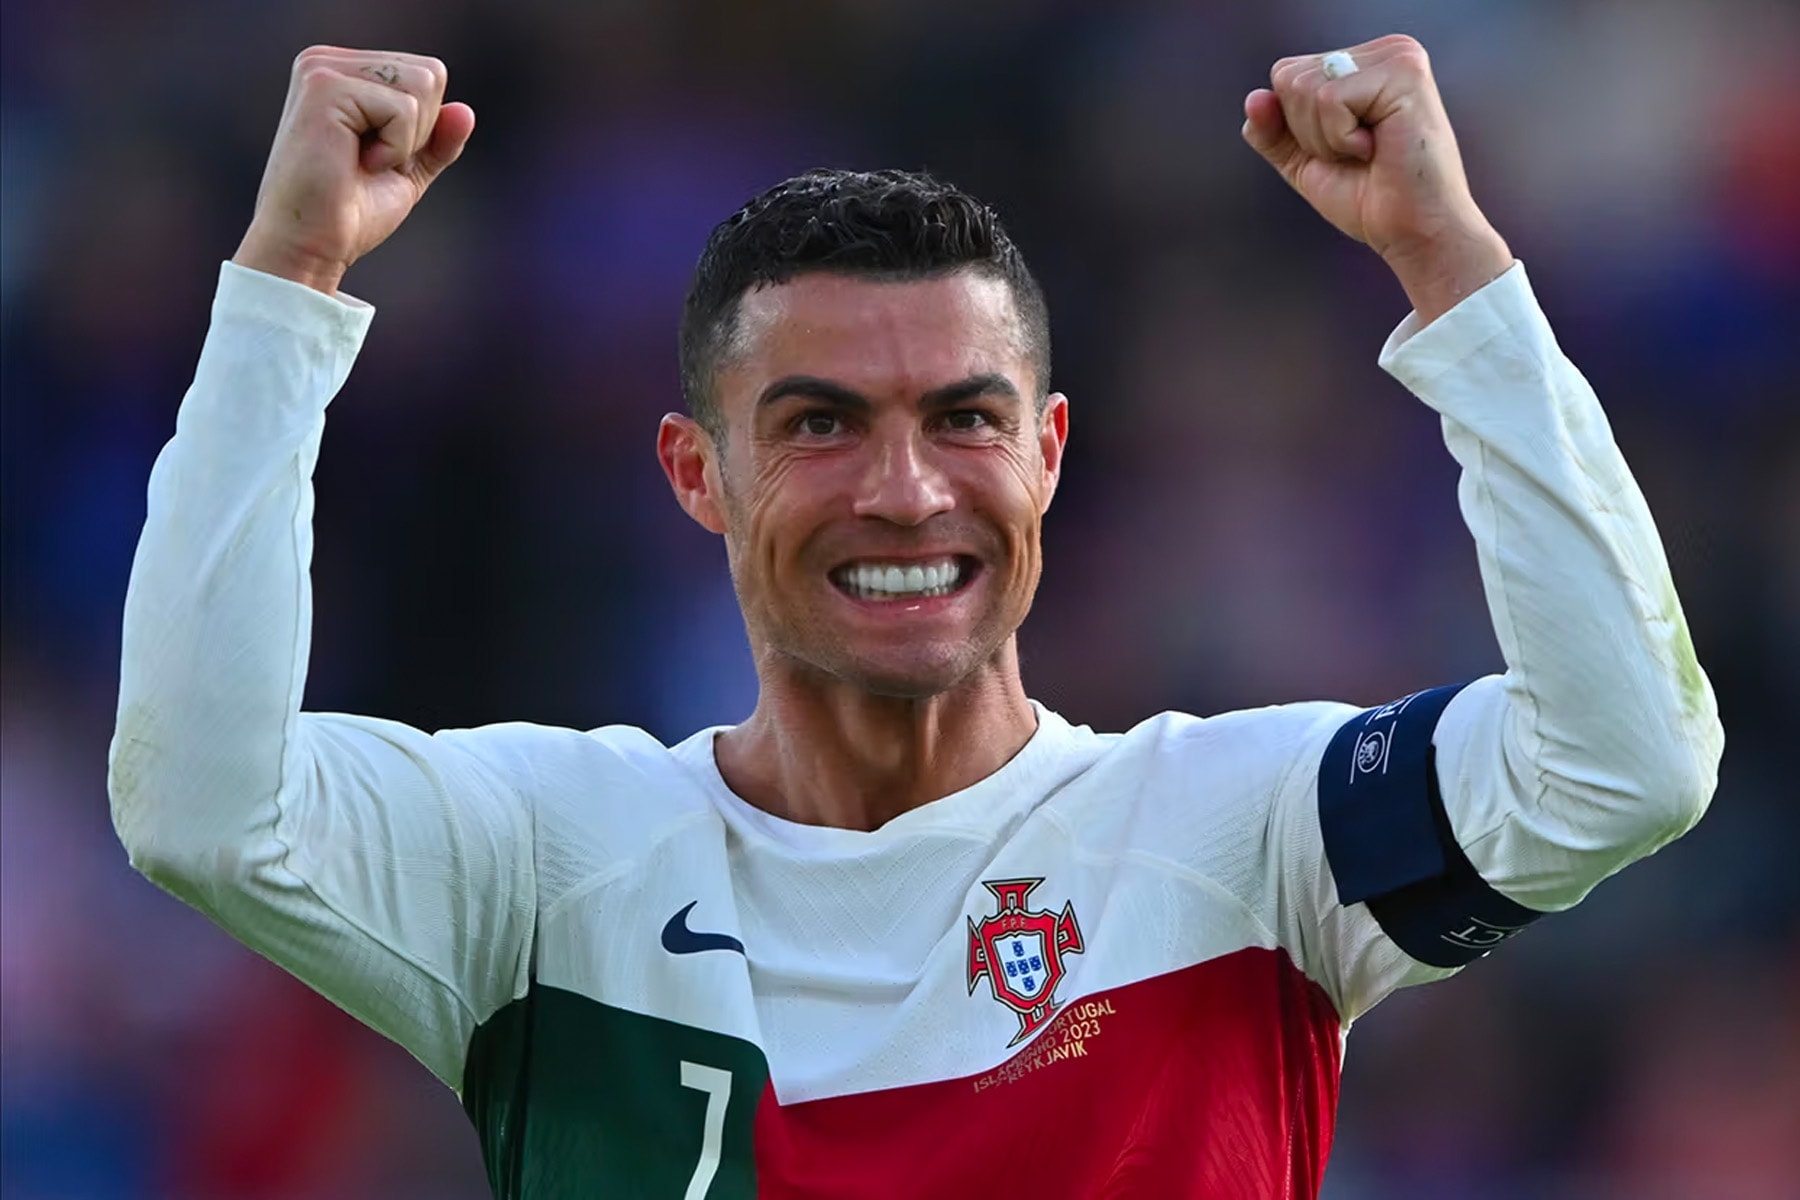 吉尼斯世界紀錄認證 Cristiano Ronaldo 為本年世界最高收入運動員